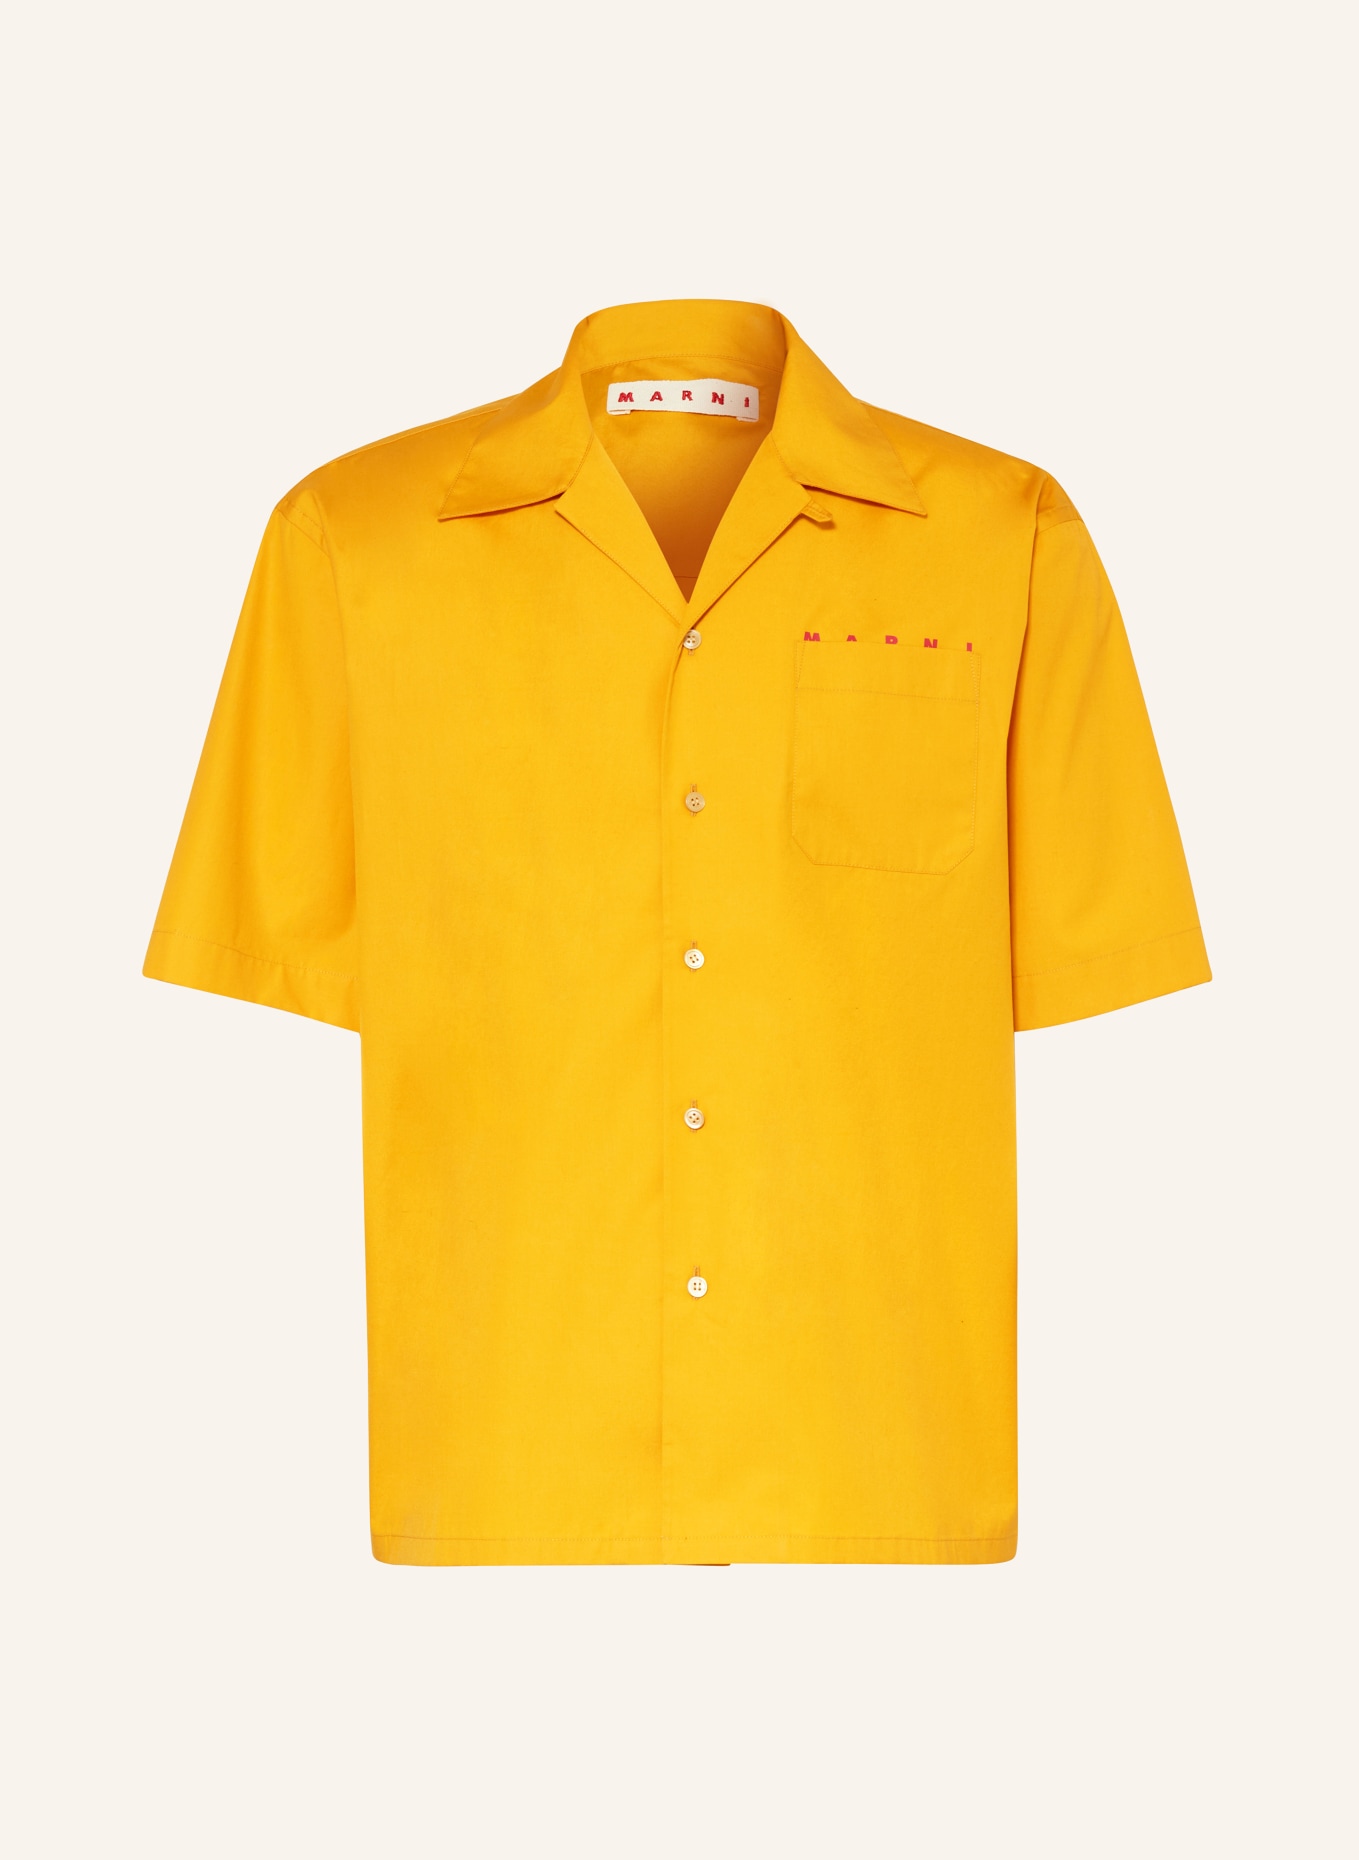 MARNI Resort shirt comfort fit, Color: LIGHT ORANGE (Image 1)